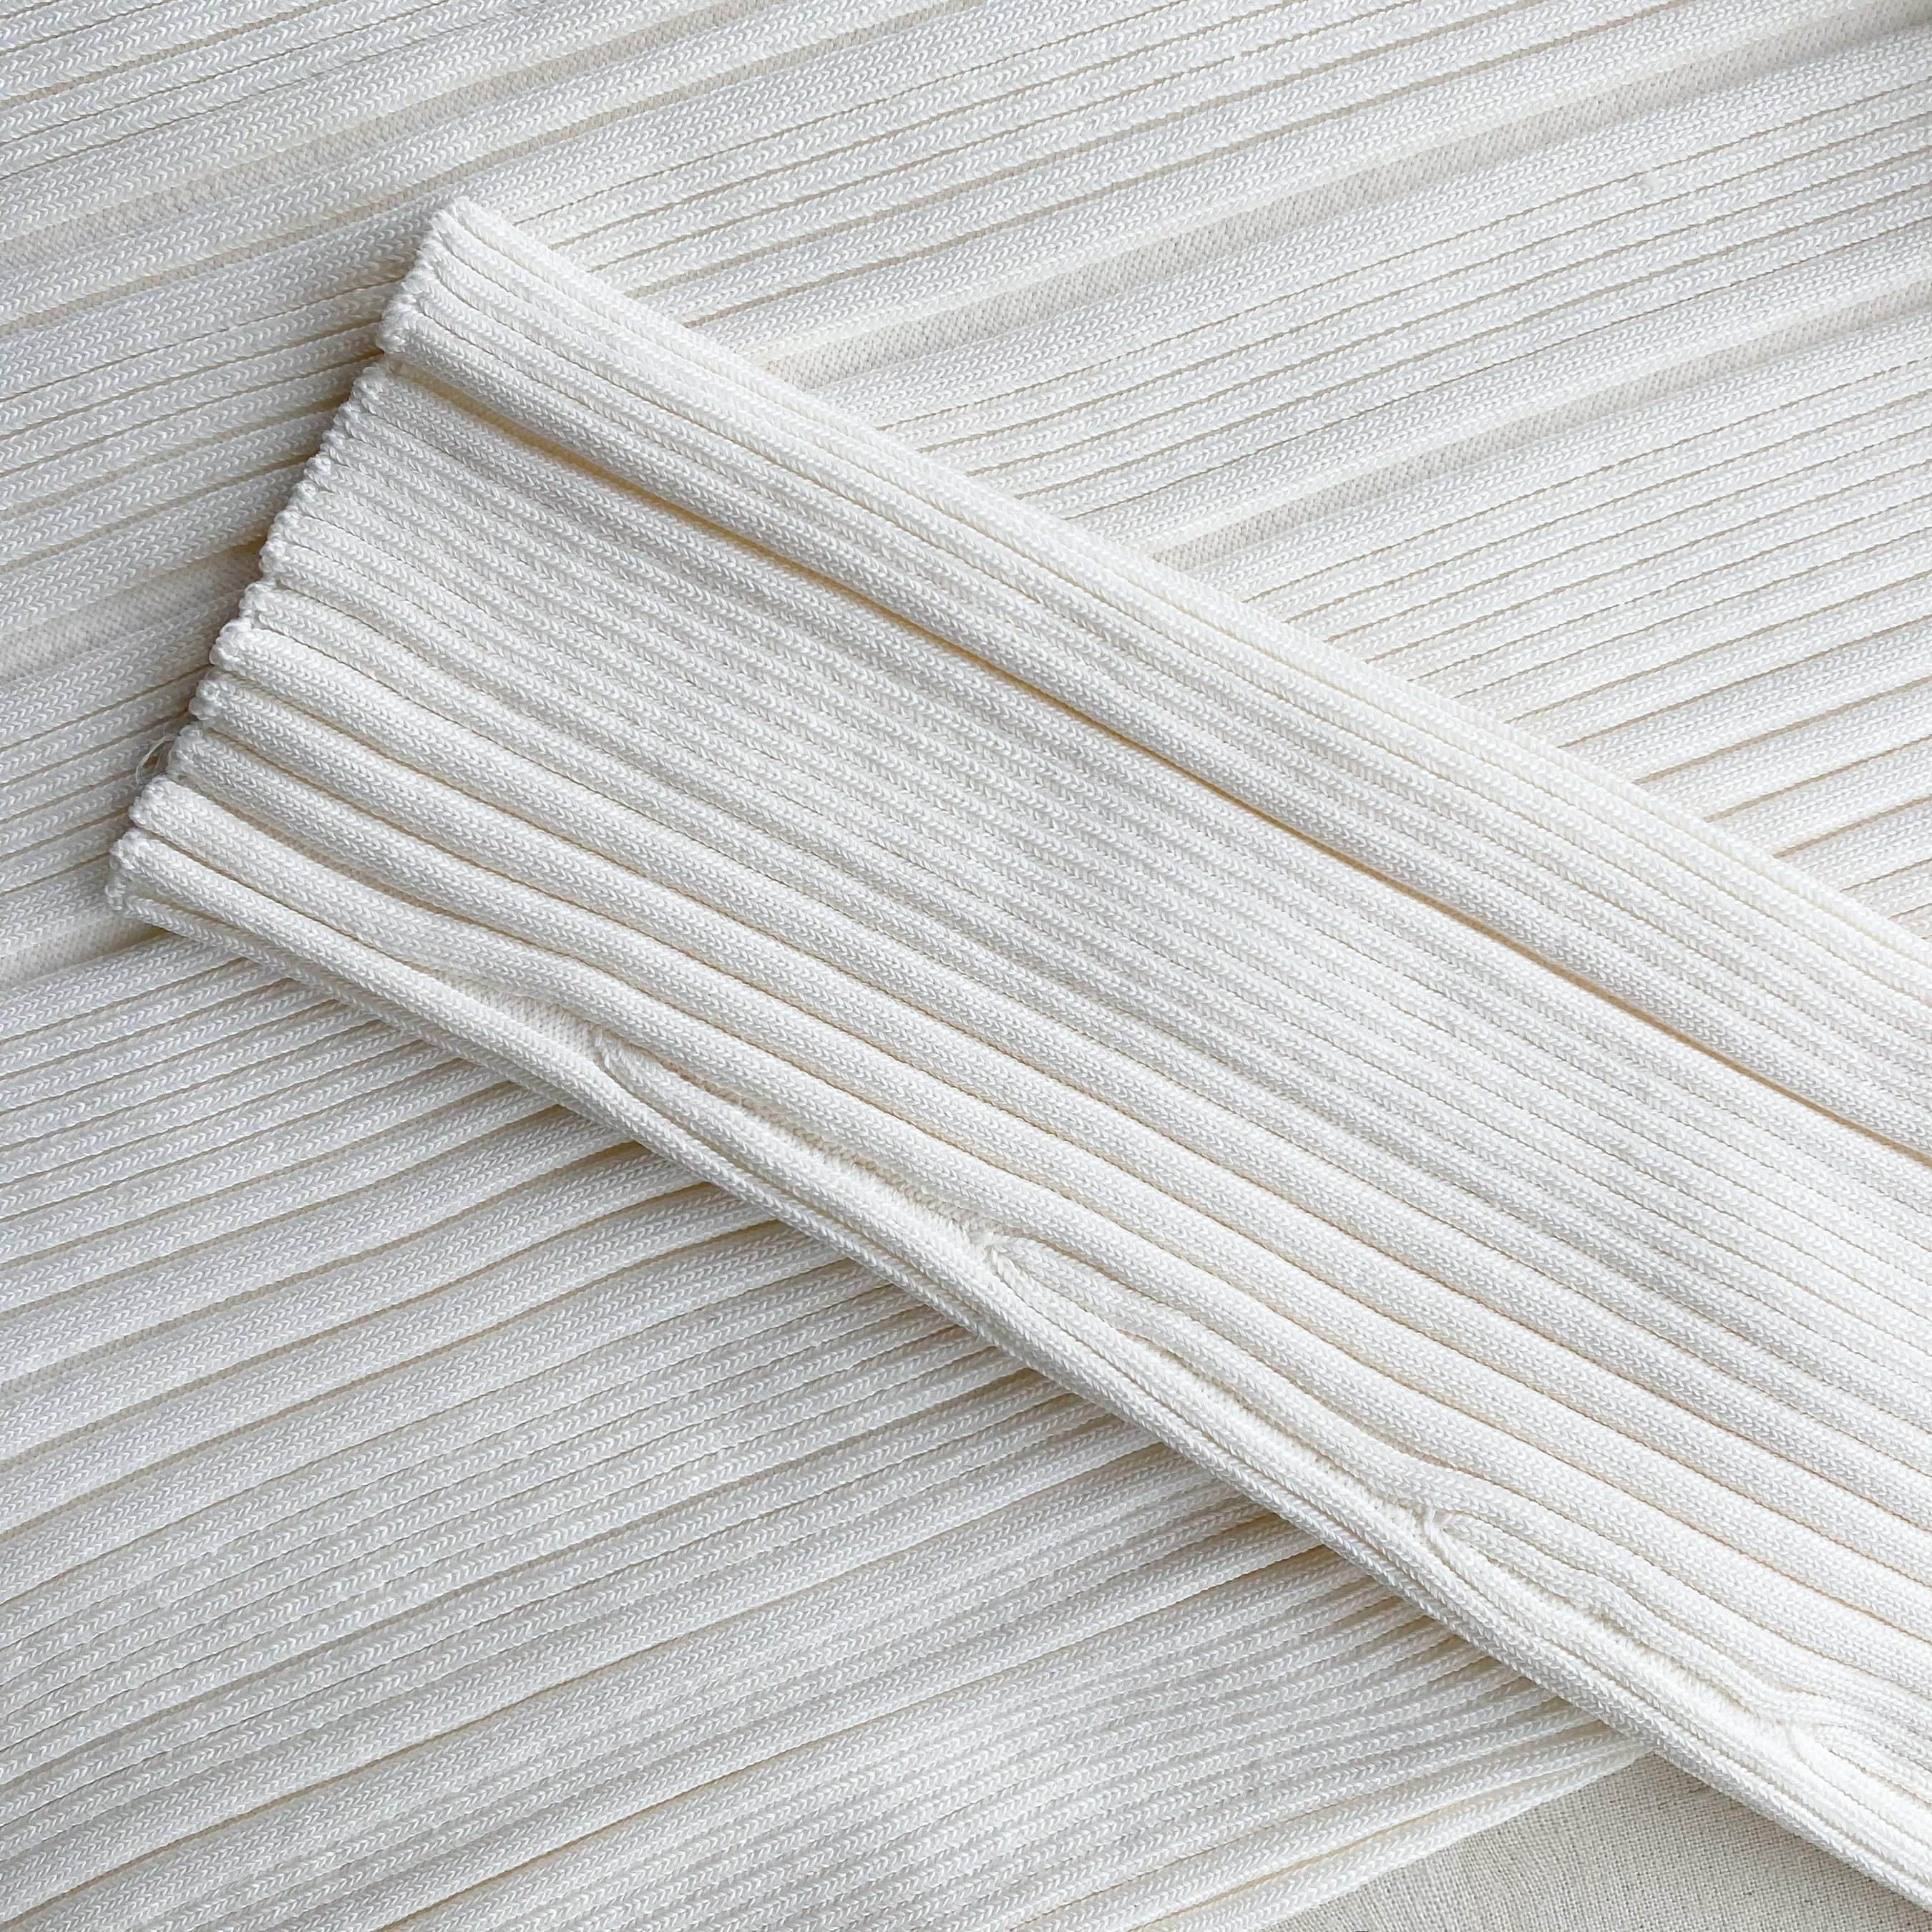 Ivory Contrast Stitch Knit Dress